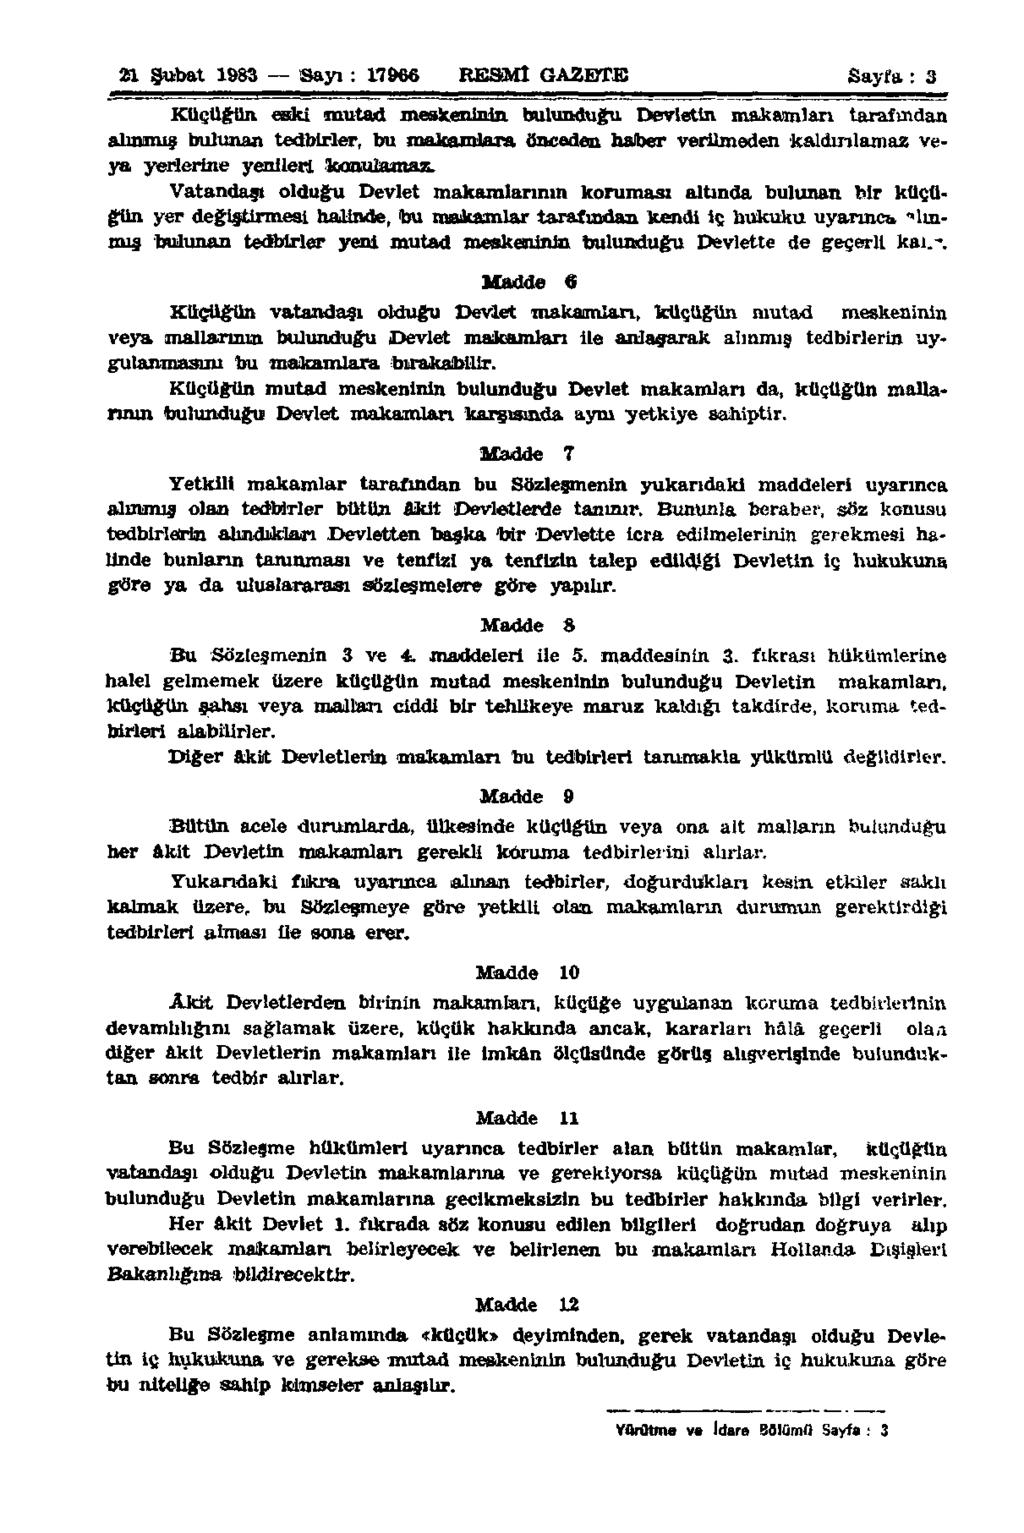 21 Şubat 1983 Sayı : 17666 RESMÎ GAZETE Sayfa : 3 Küçüğün eski mutad meskeninin bulunduğu Devletin makamları tarafından alınmış bulunan tedbirler, bu makamlara önceden haber verilmeden kaldırılamaz